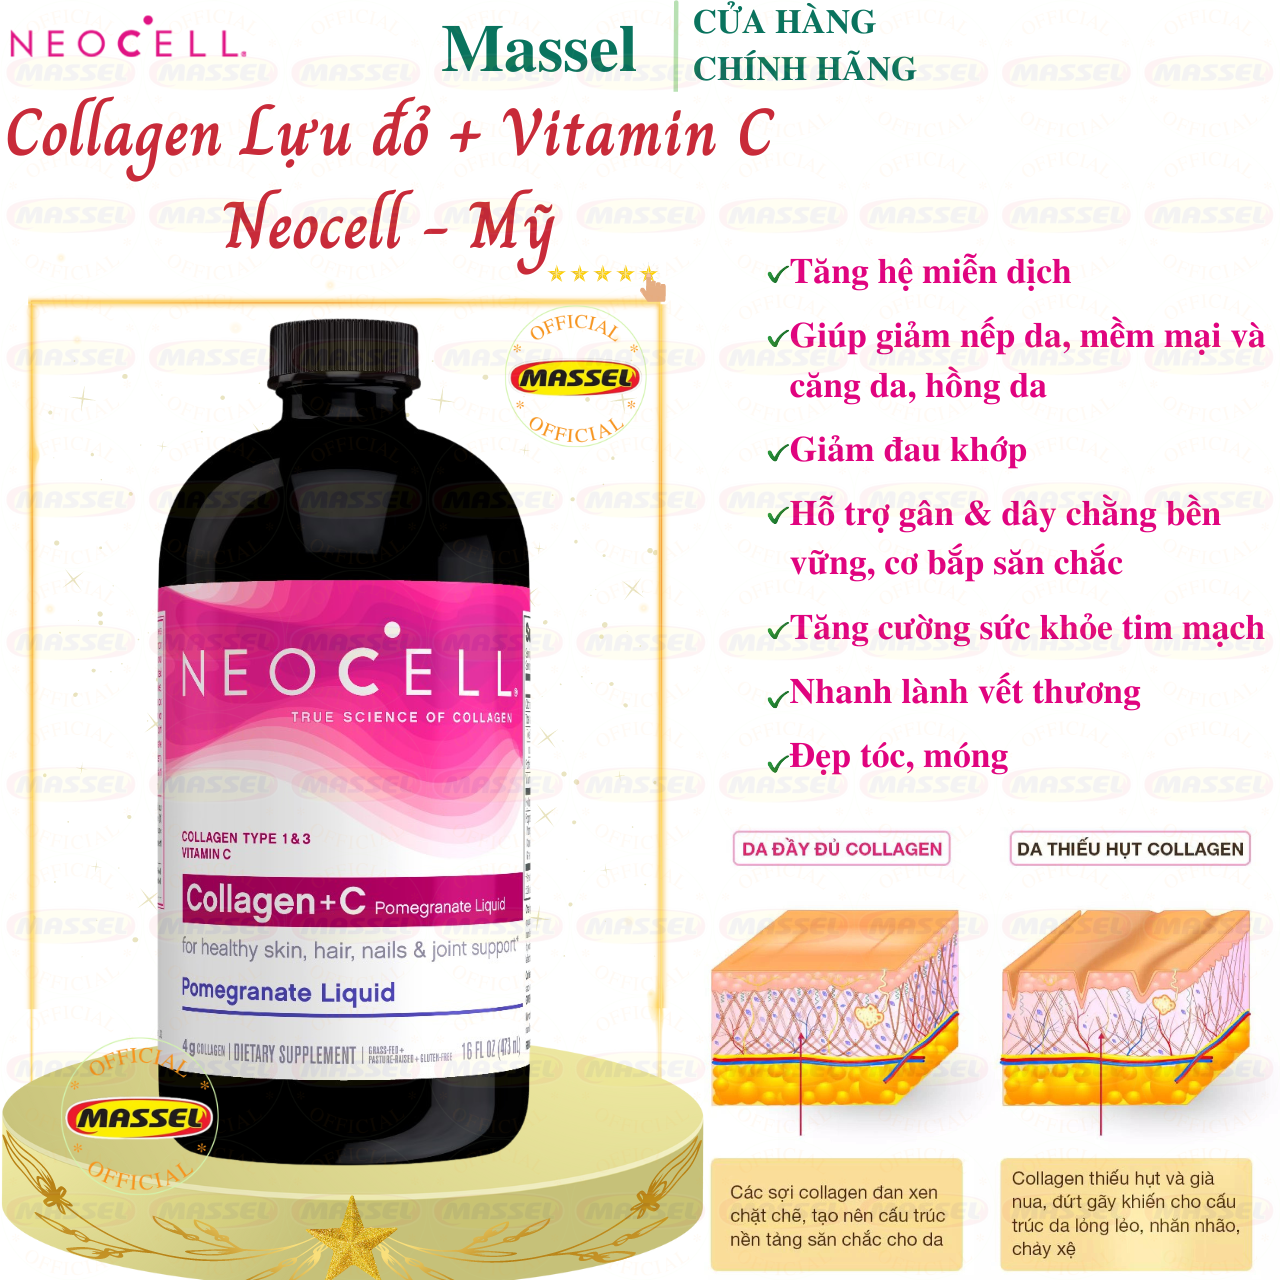 Collagen Neocell Types 1 & 3 Mỹ Hỗ trợ cang da, giảm nhăn da, giúp da, tóc, móng tay và khớp khỏe mạnh từ bên trong ra ngoài - Massel Official